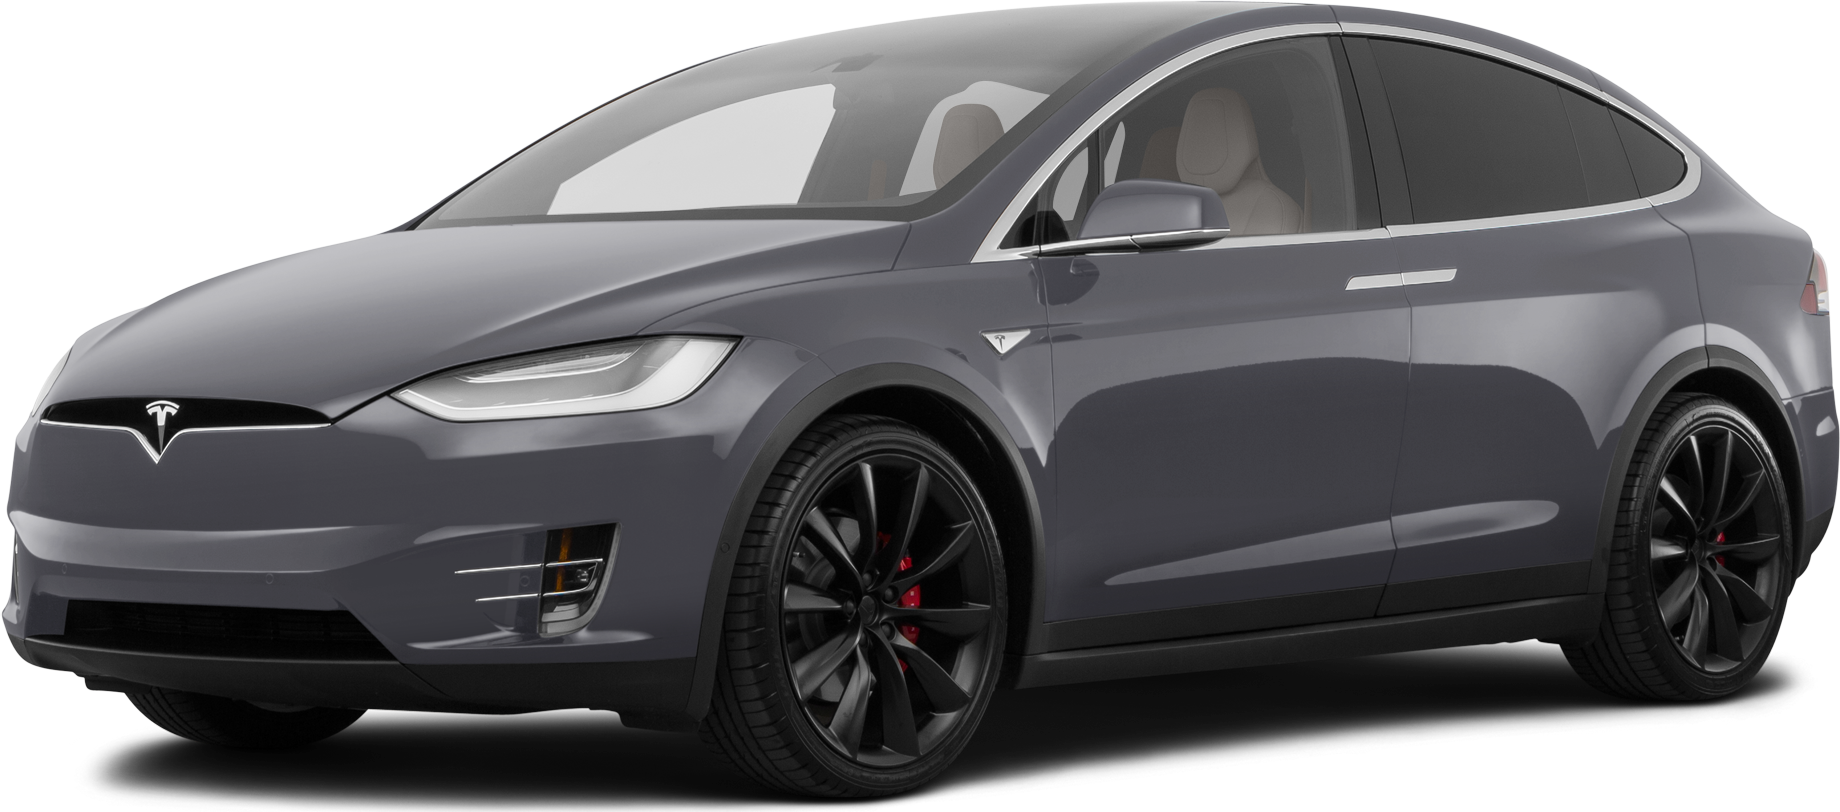 musicus Ontslag Frustrerend 2018 Tesla Model S Values & Cars for Sale | Kelley Blue Book